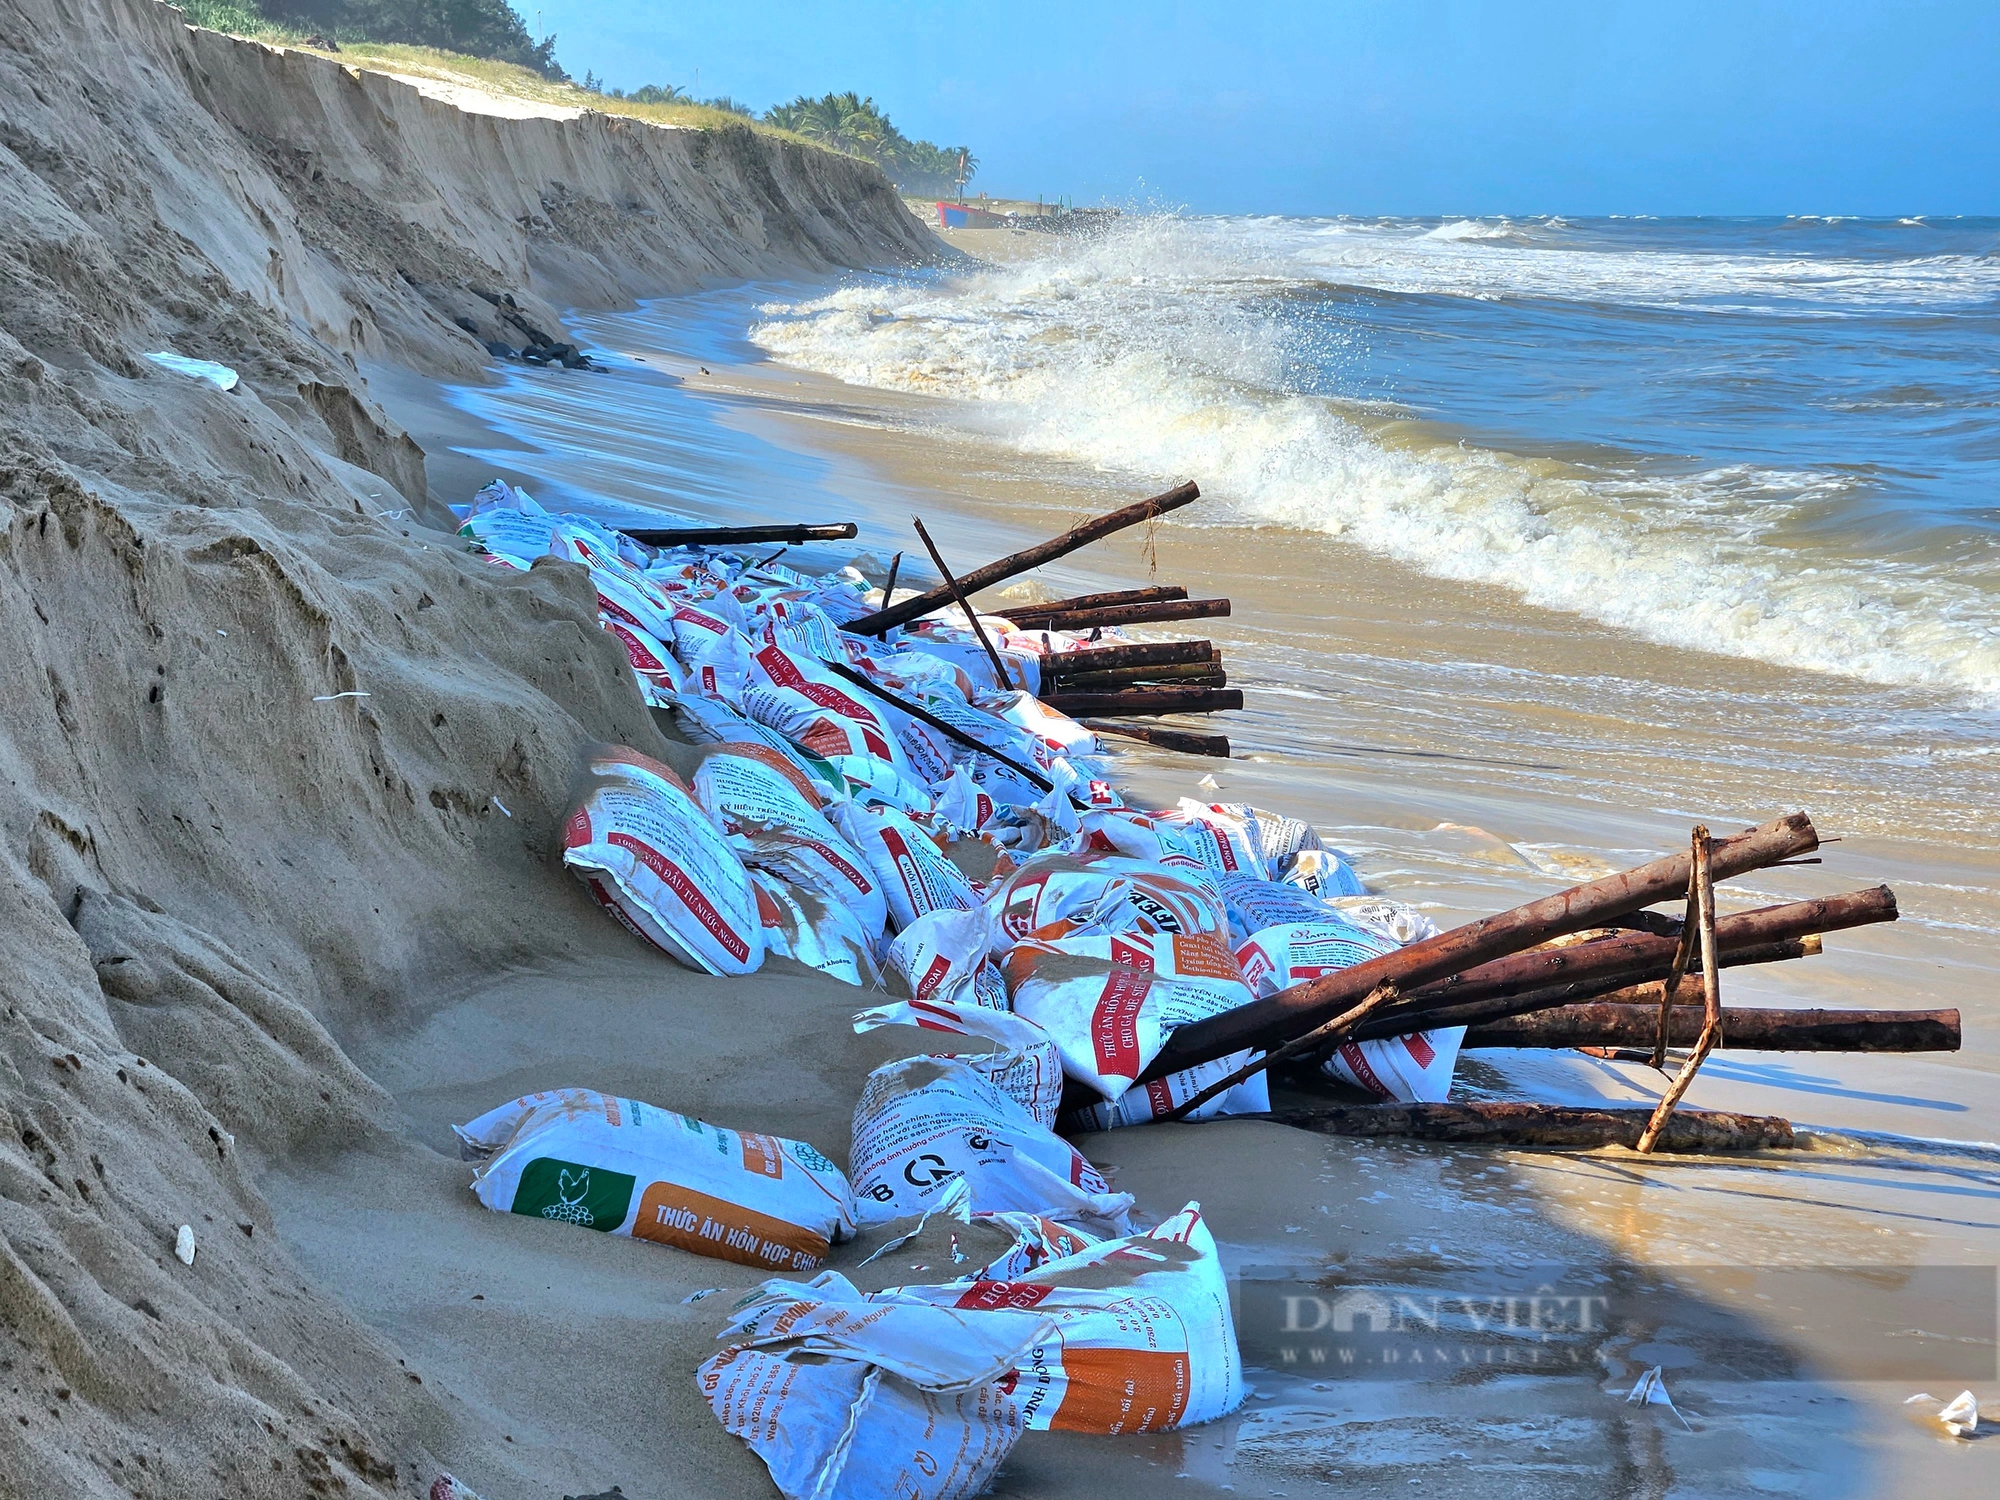 Sau phản ánh báo Dân Việt, Bí thư Tỉnh ủy Quảng Bình trực tiếp kiểm tra xói, lở ở bãi biển Bảo Ninh- Ảnh 3.